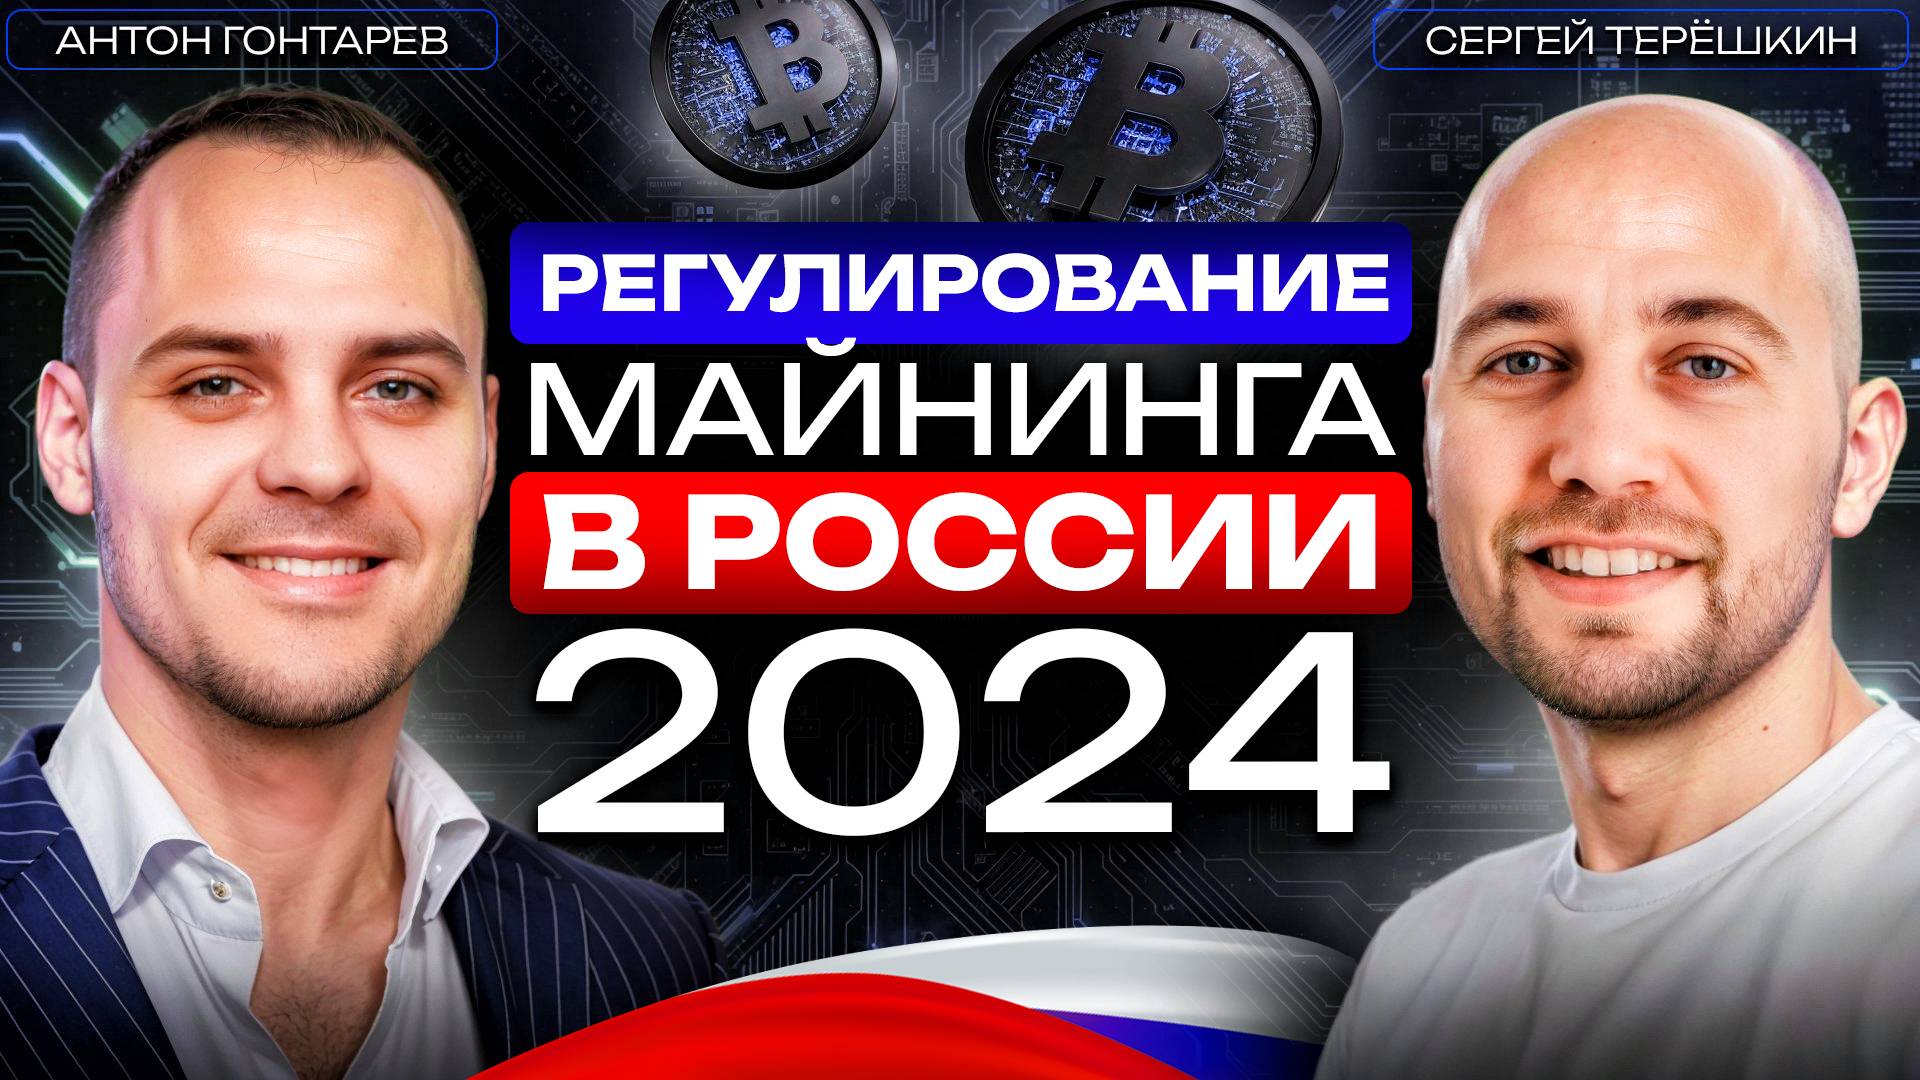 Майнинг криптовалюты: каким будет его государственное регулирование в России 2024?